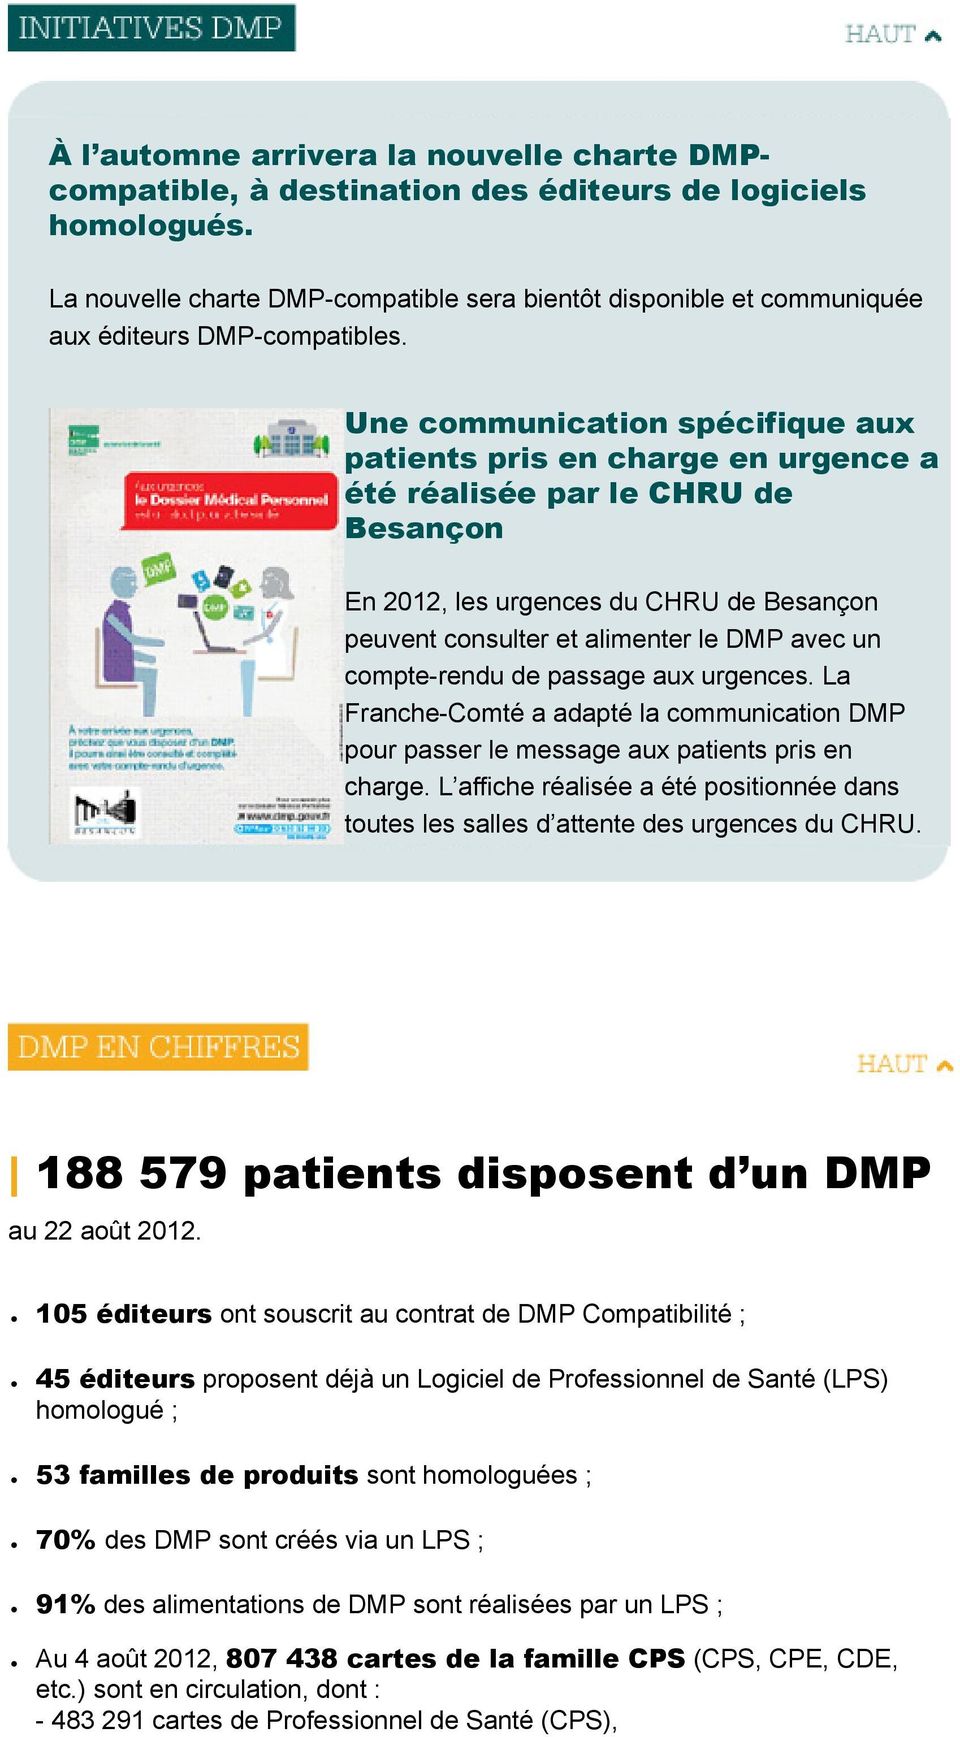 Une communication spécifique aux patients pris en charge en urgence a été réalisée par le CHRU de Besançon En 2012, les urgences du CHRU de Besançon peuvent consulter et alimenter le DMP avec un